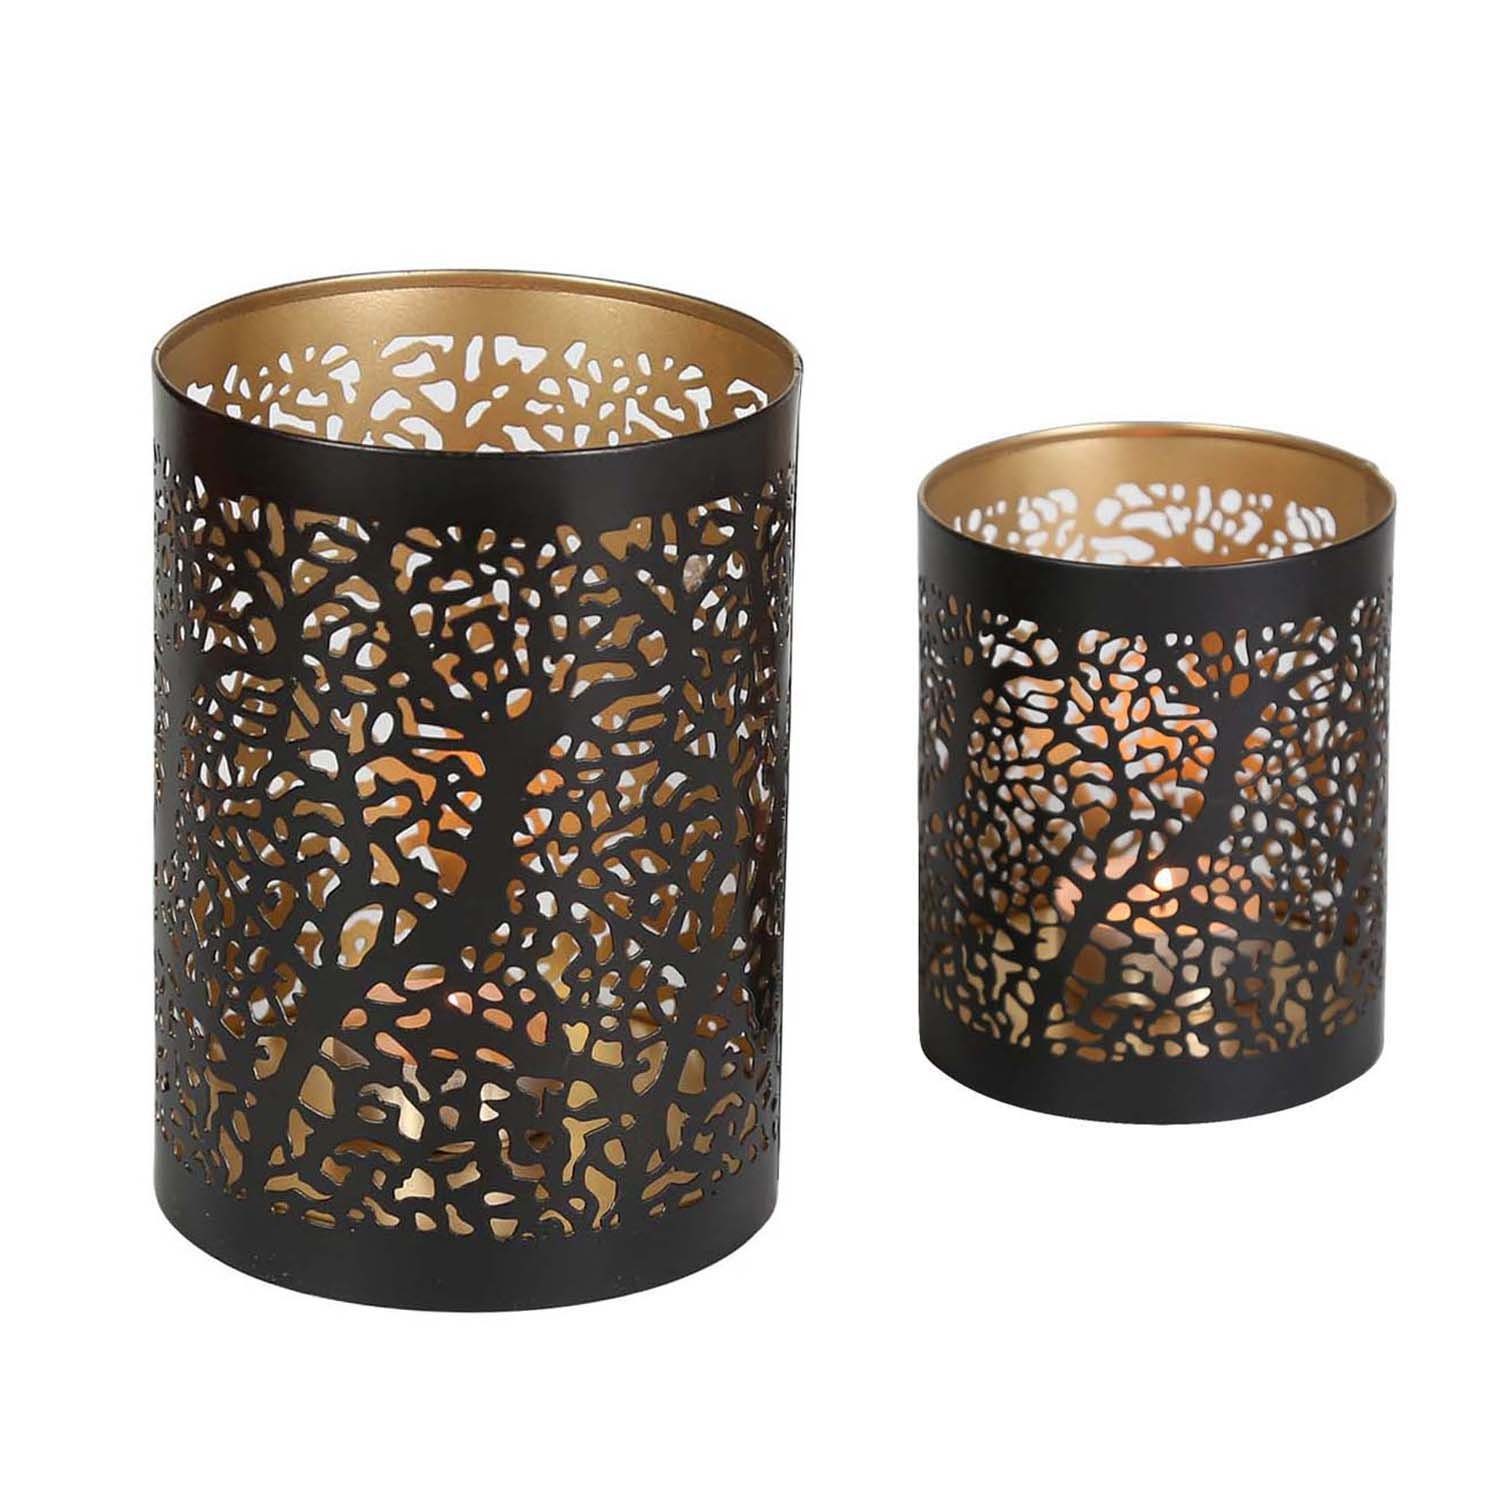 Casa Moro Windlicht Orientalischer Kerzenhalter Ancona 2er Set rund innen  Gold außen schwarz, Marokkanische Teelichthalter wie aus 1001 Nacht,  Tisch-Deko Windlicht Weihnachten, IRL80